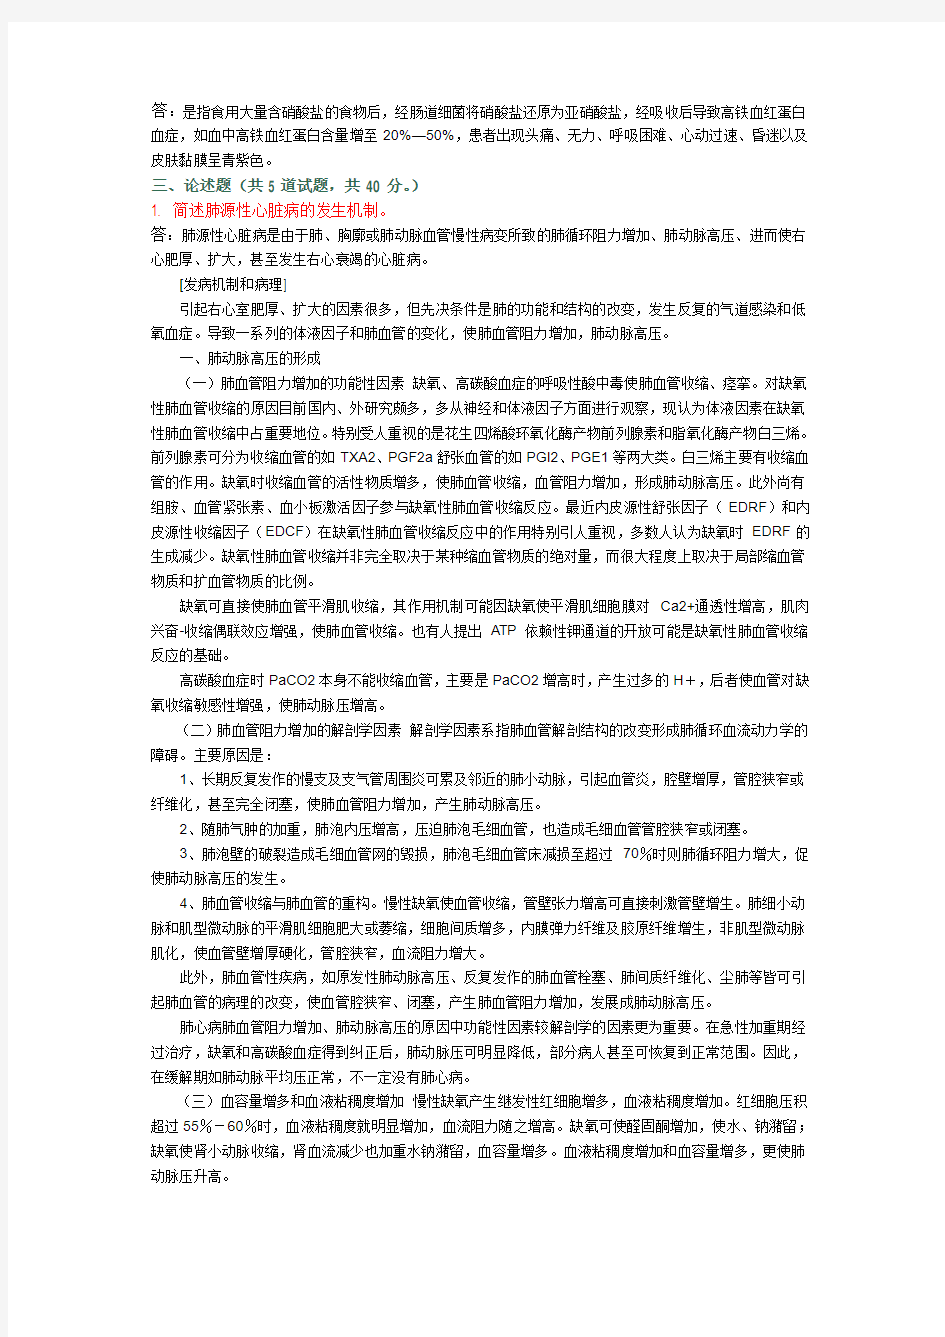 中国医科大学2013年1月考试《病理生理学》考查课试题答案